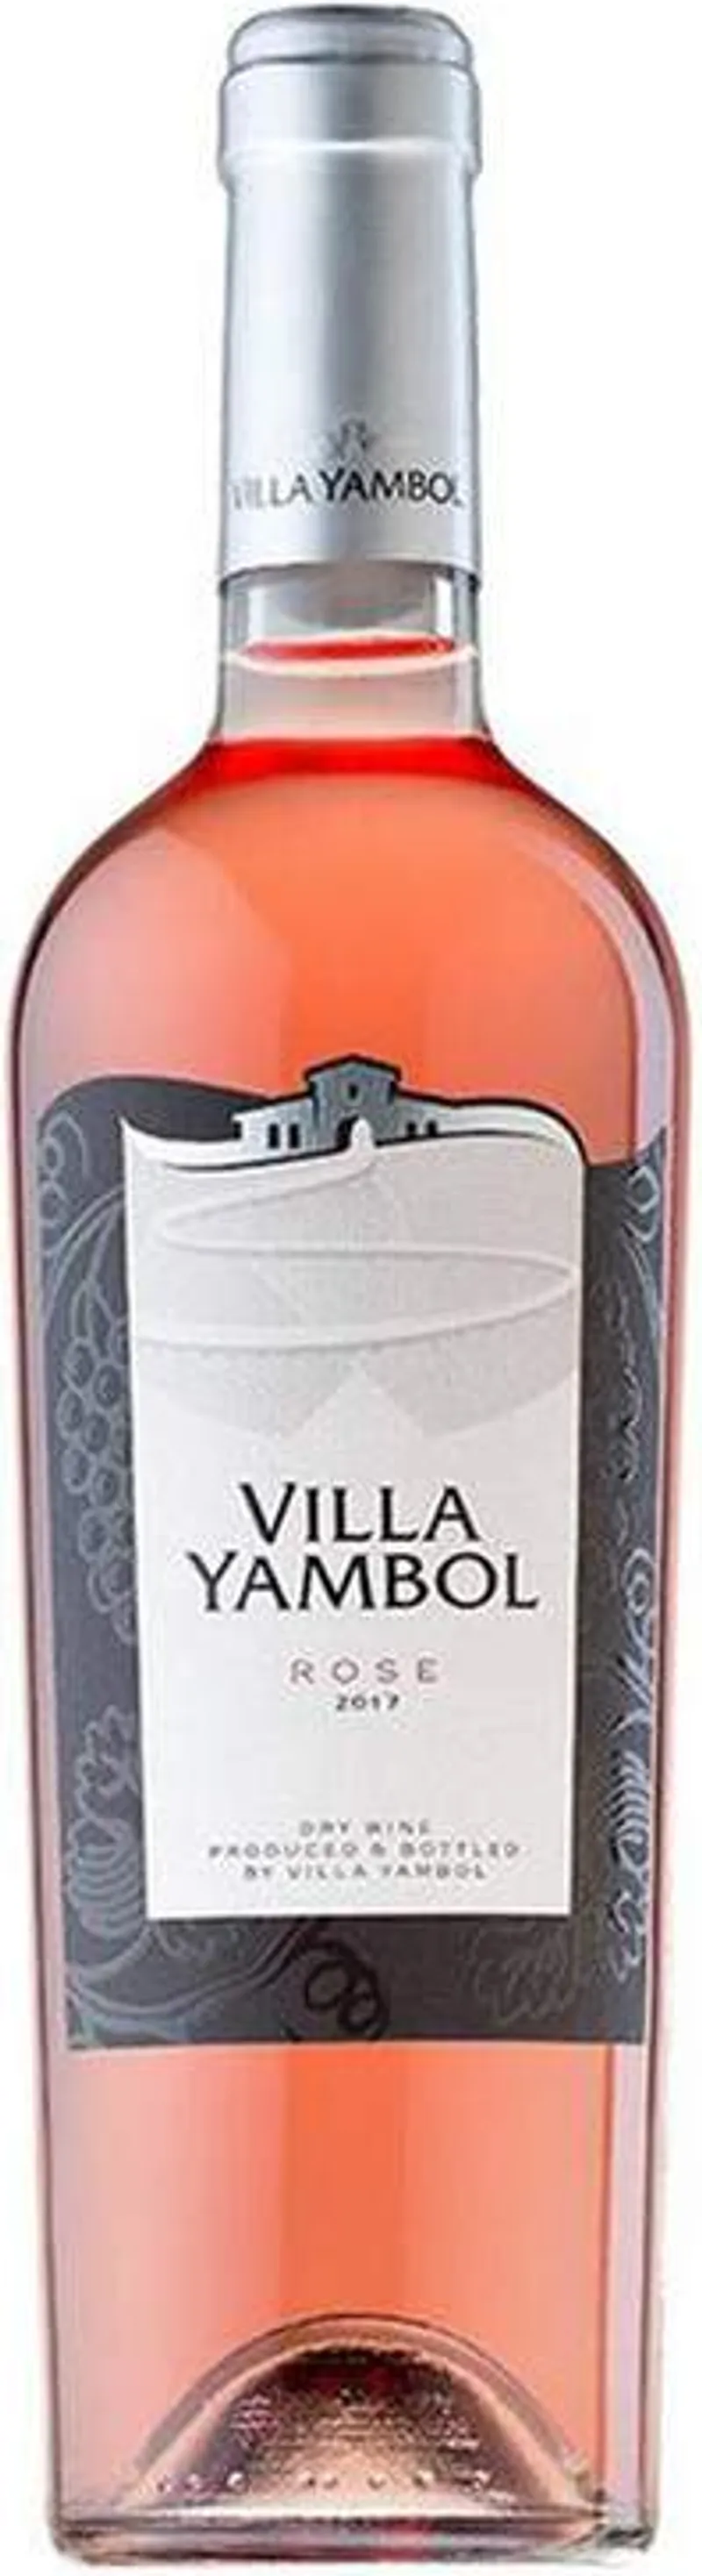 Вино Розе Вила Ямбол (750мл)